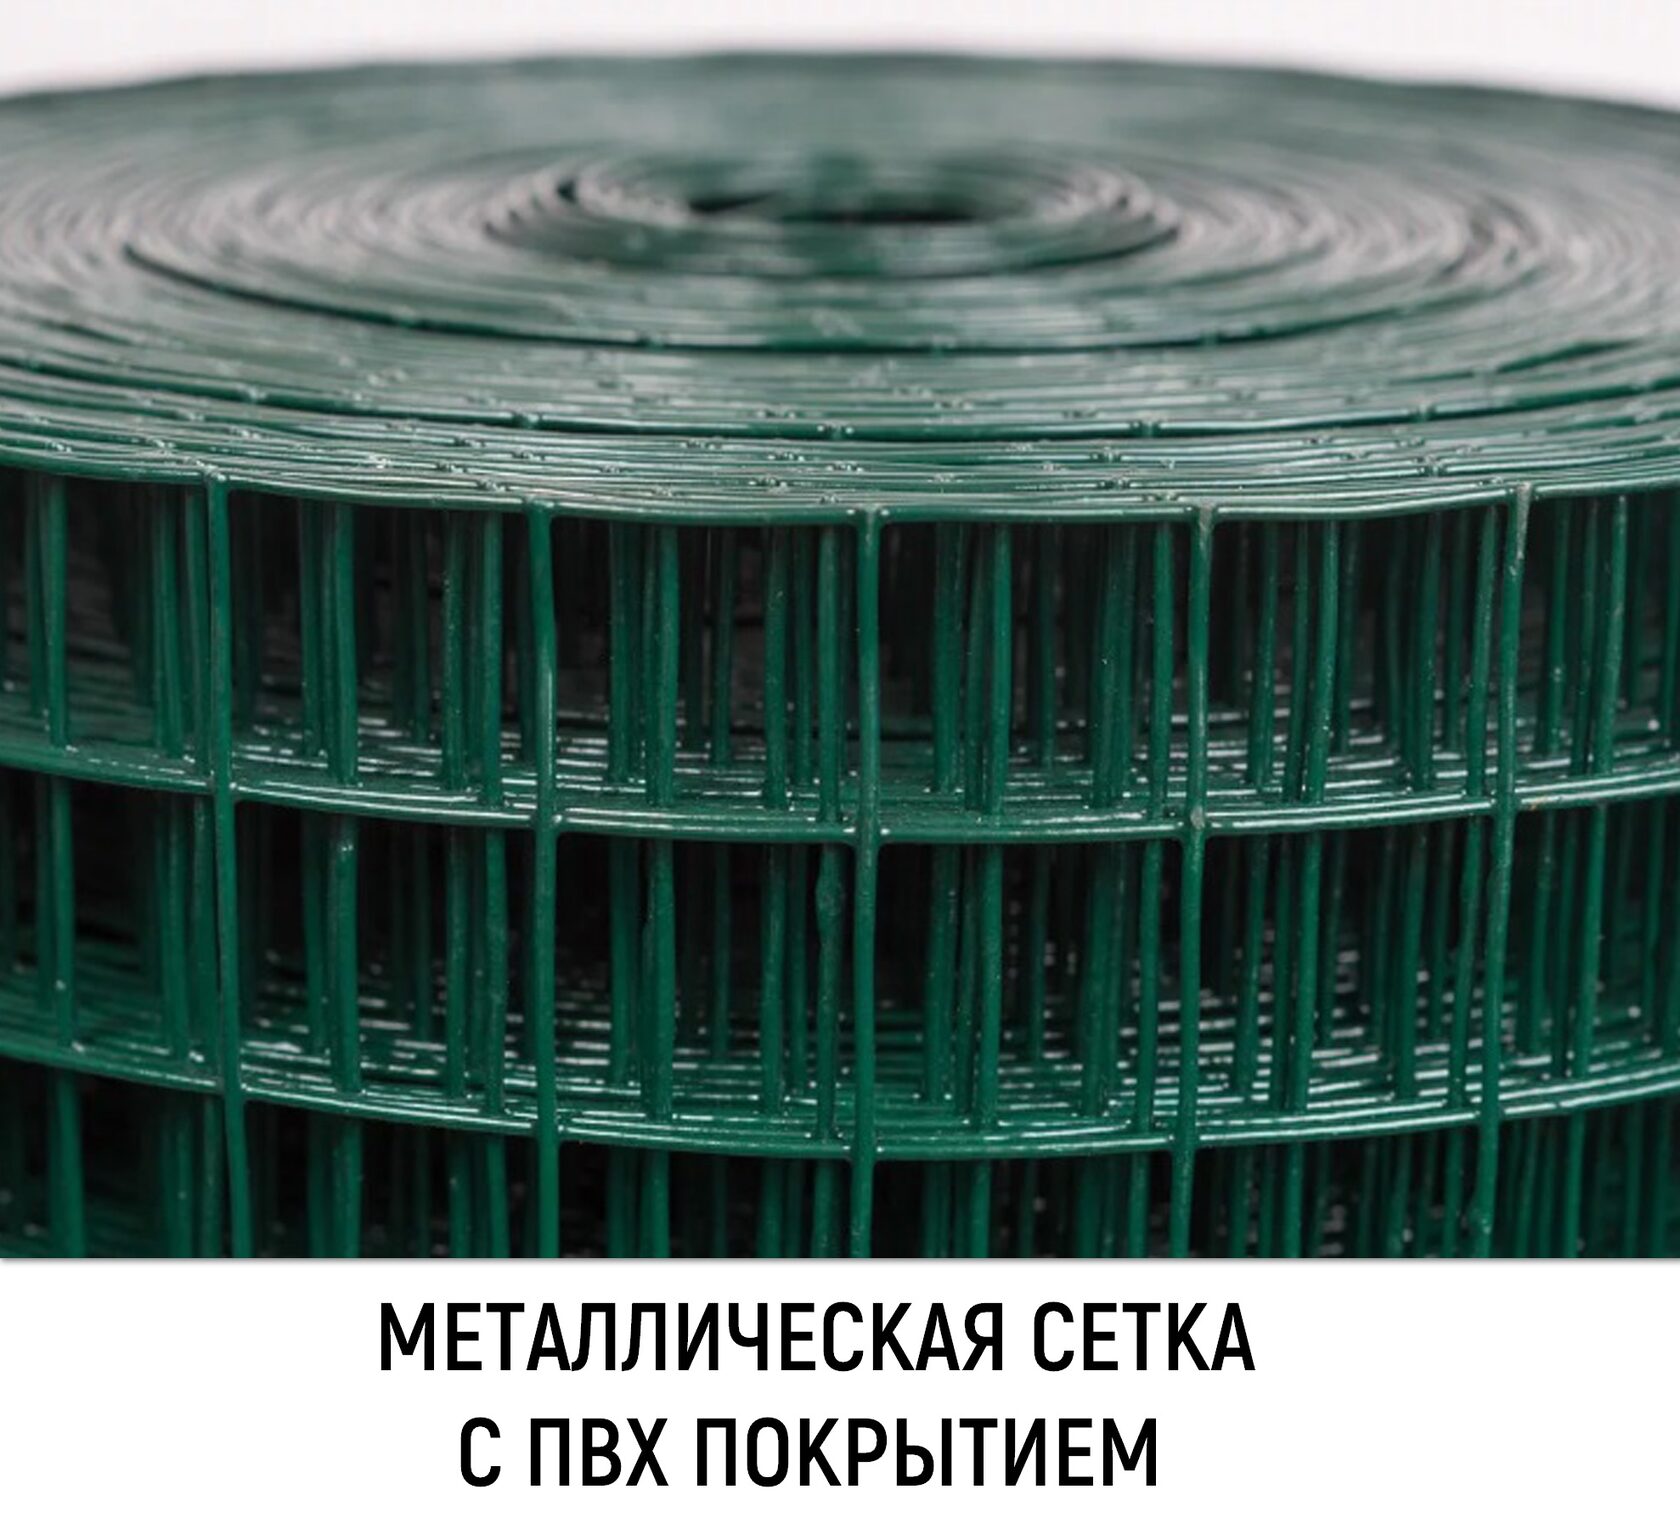 Сетка ячейки 3 мм. Сетка сварная рулонная Europlast ячейка 100/50 мм, 2,0х25м. Сетка сварная ПВХ зеленая (50х50х2.4)х(1.5х15). Сетка сварная ПВХ 2,0х20м 50х50мм / 2,5мм. Сетка сварная оцинкованная 25х50.